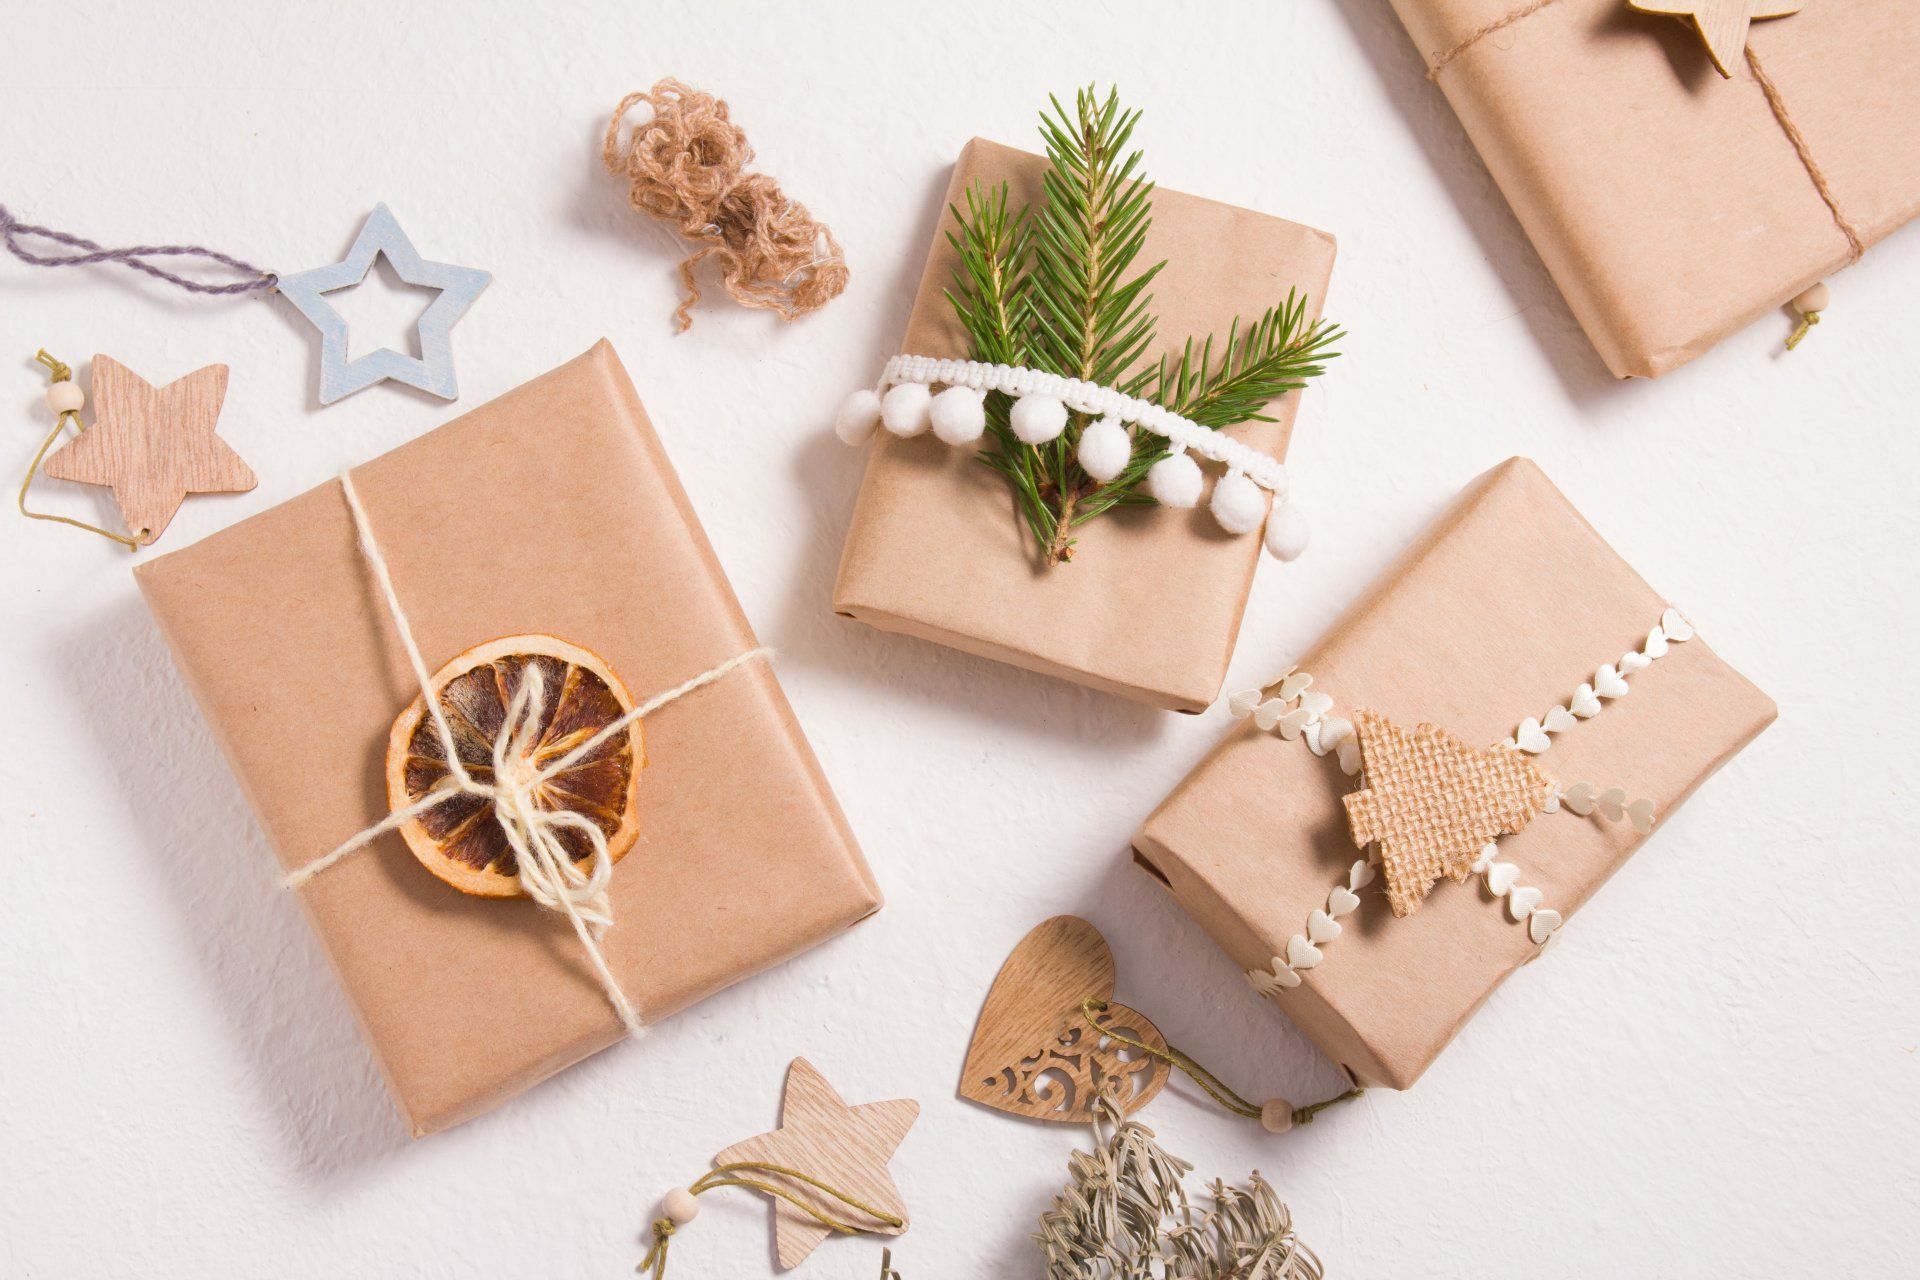 Varias cajas de regalo decoradas en estilo ecológico sobre un fondo blanco, regalos para año nuevo o navidad, estilo de vida sin desperdicio